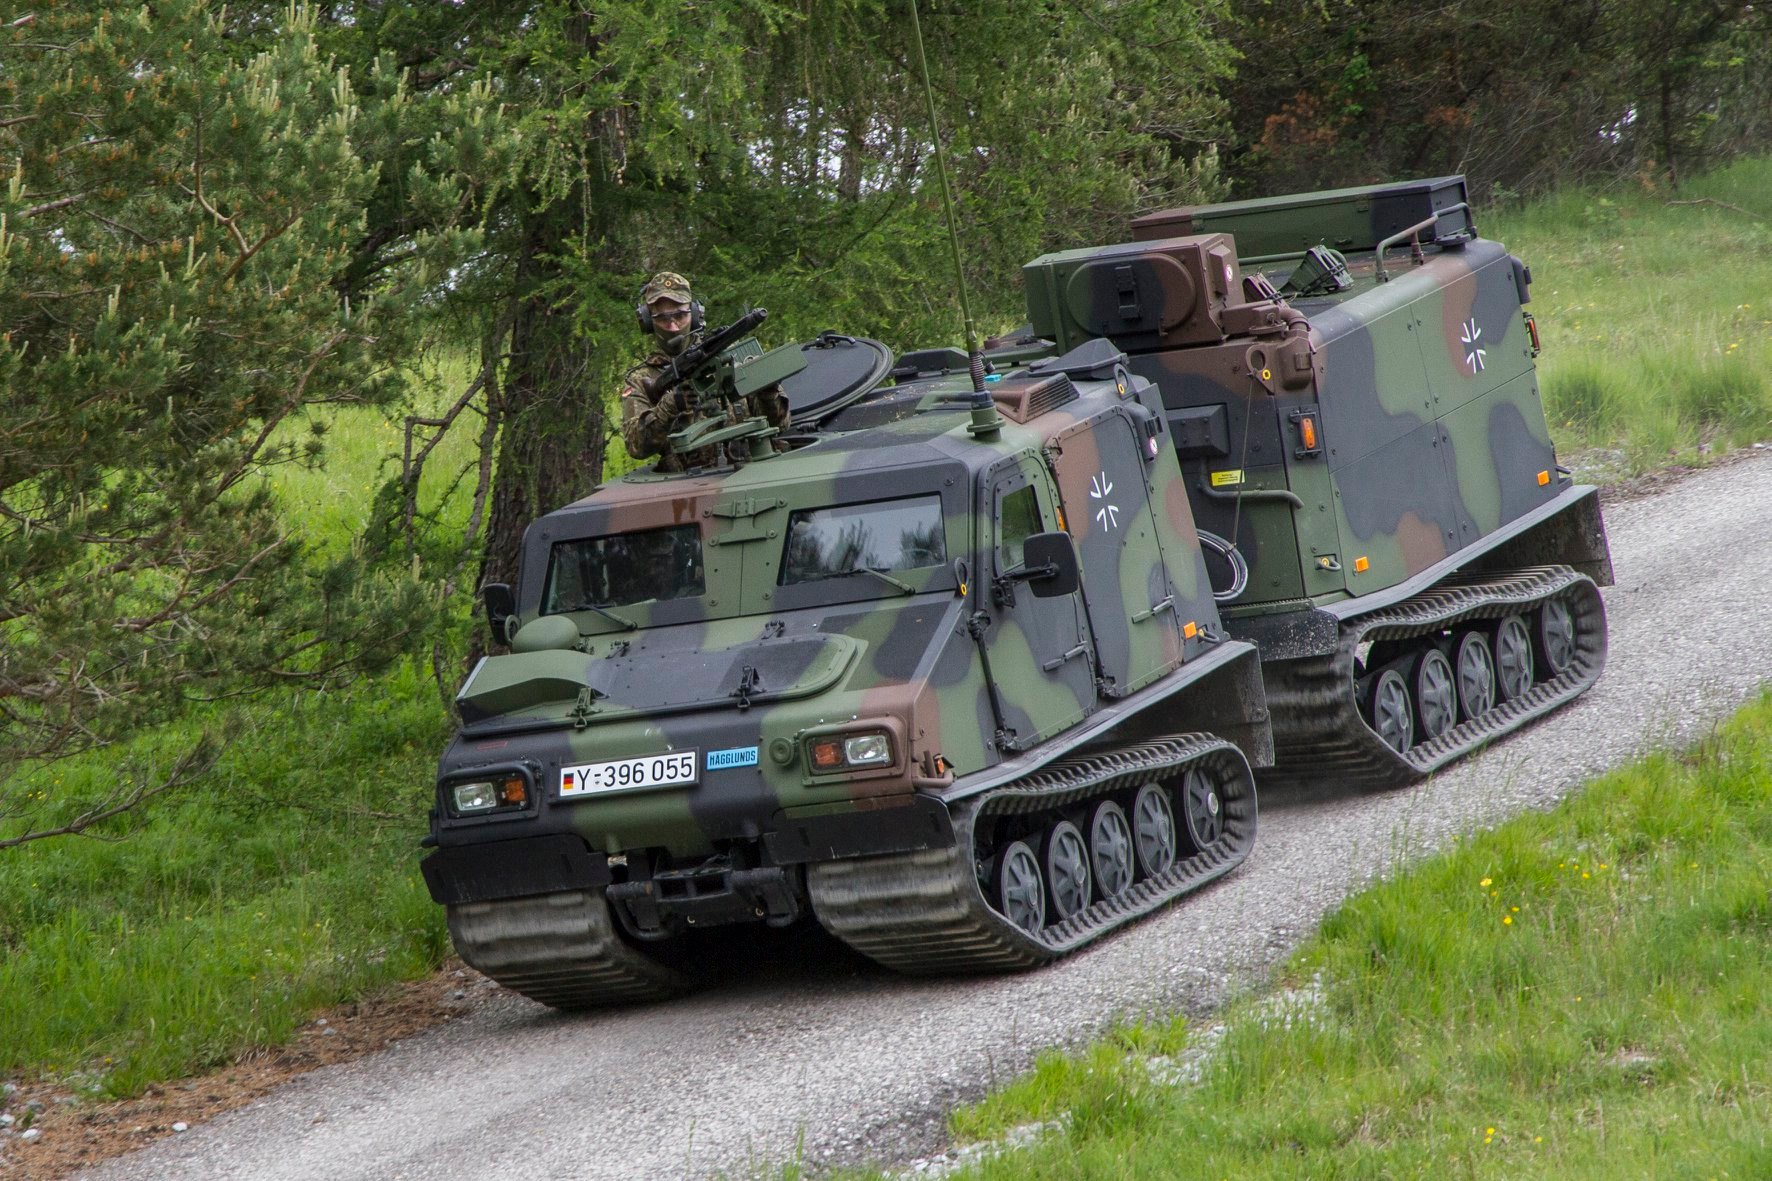 ВСУ получили от Германии первые вездеходы Bandvagn 206